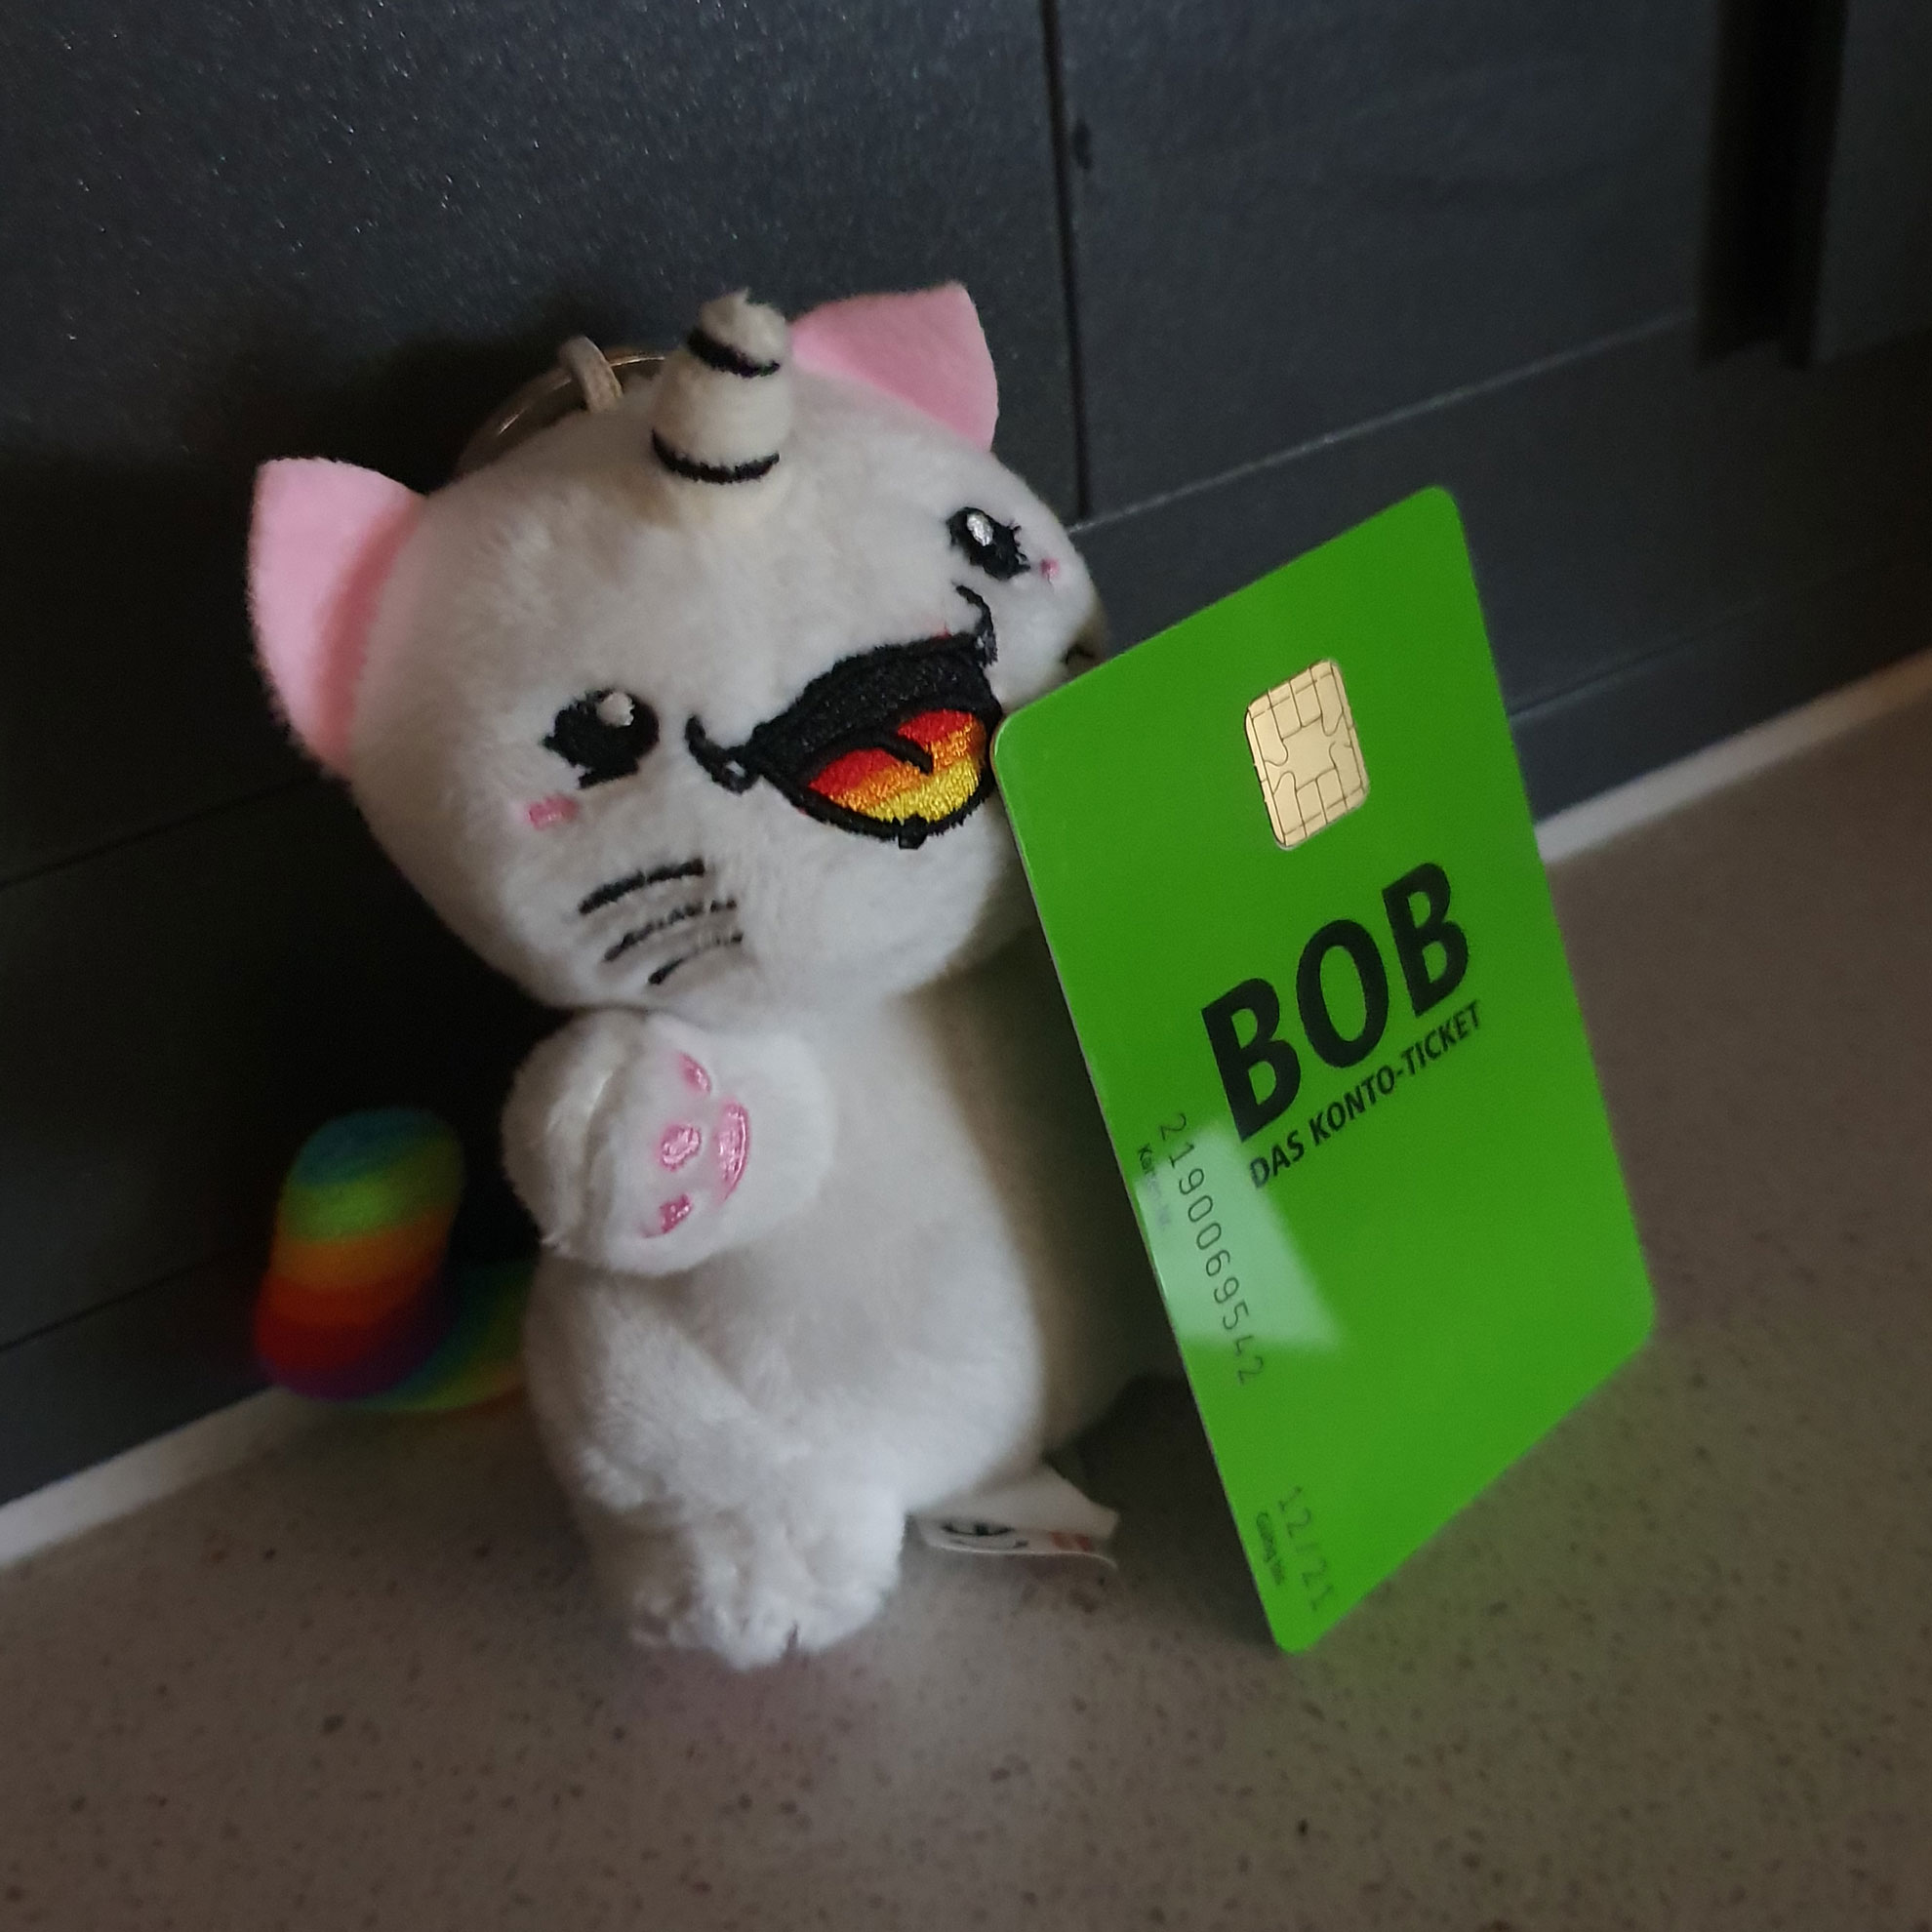 Ein kleines weißes Stofftier-Einhorn hält eine grüne Plastik-Karte im EC-Karten-Format vor sich: Das BOB-Konto-Ticket der BSAG.